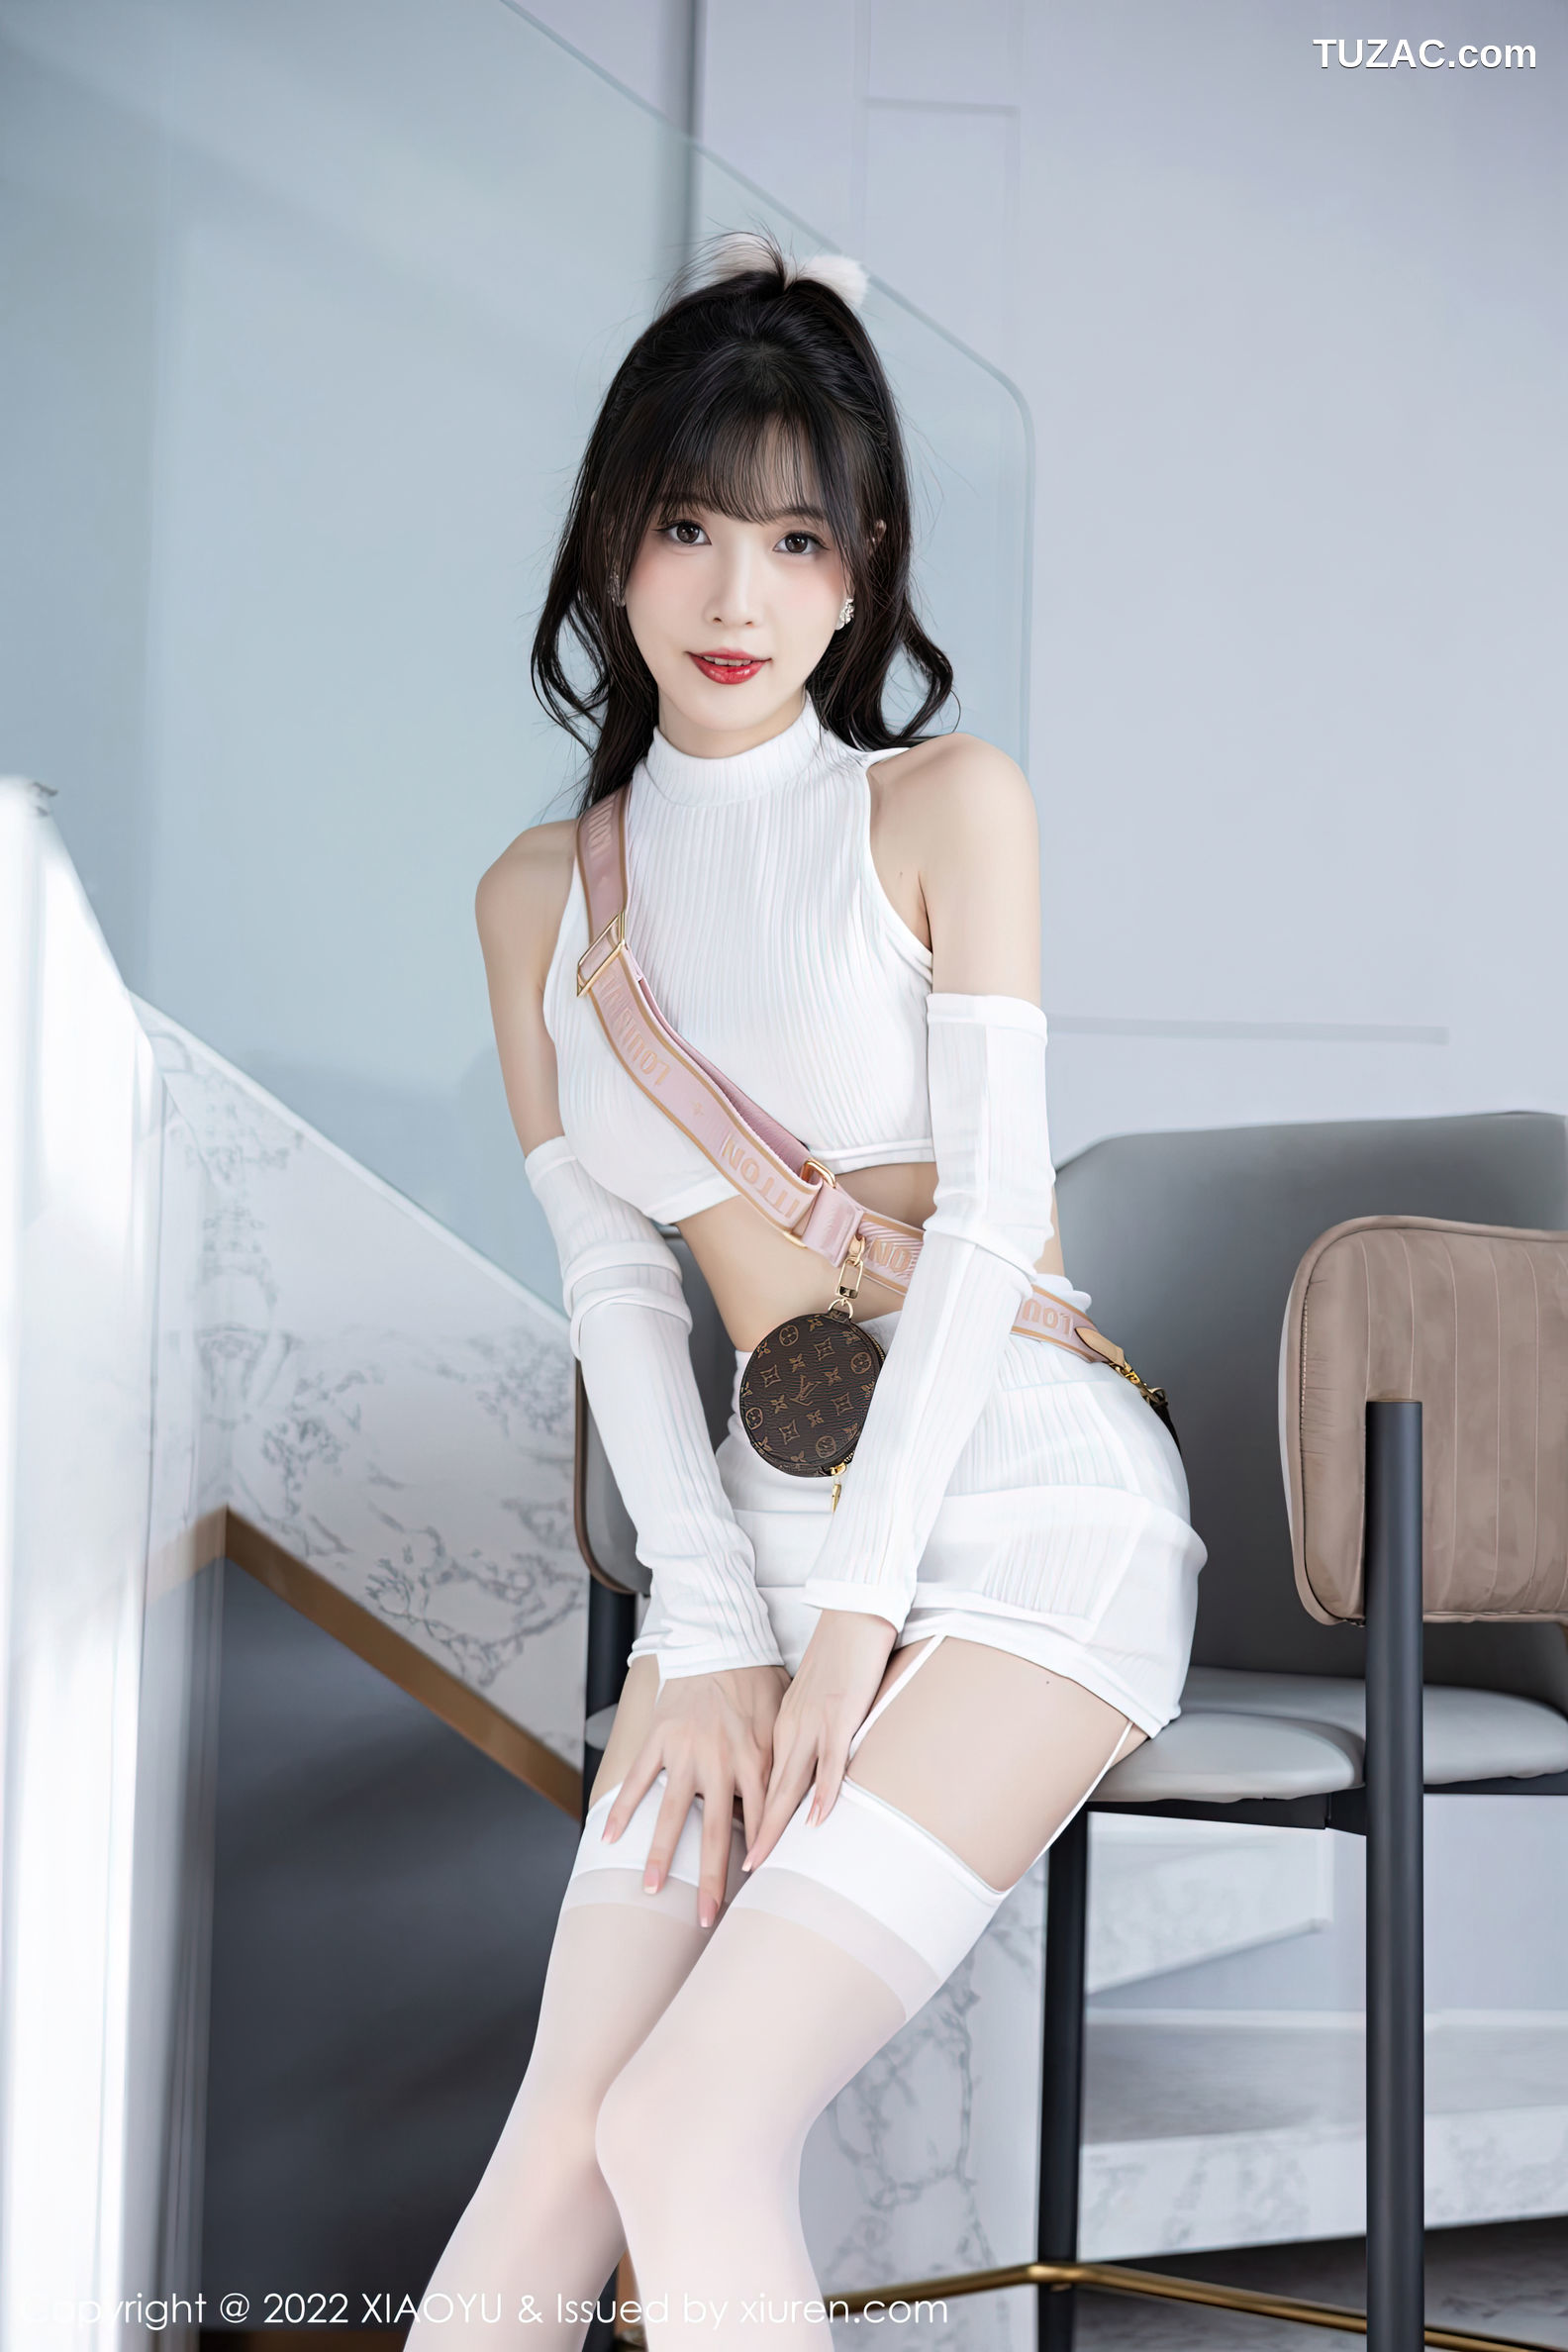 XiaoYu语画界-928-林星阑-白色抹胸内衣白丝吊带袜-2022.12.19